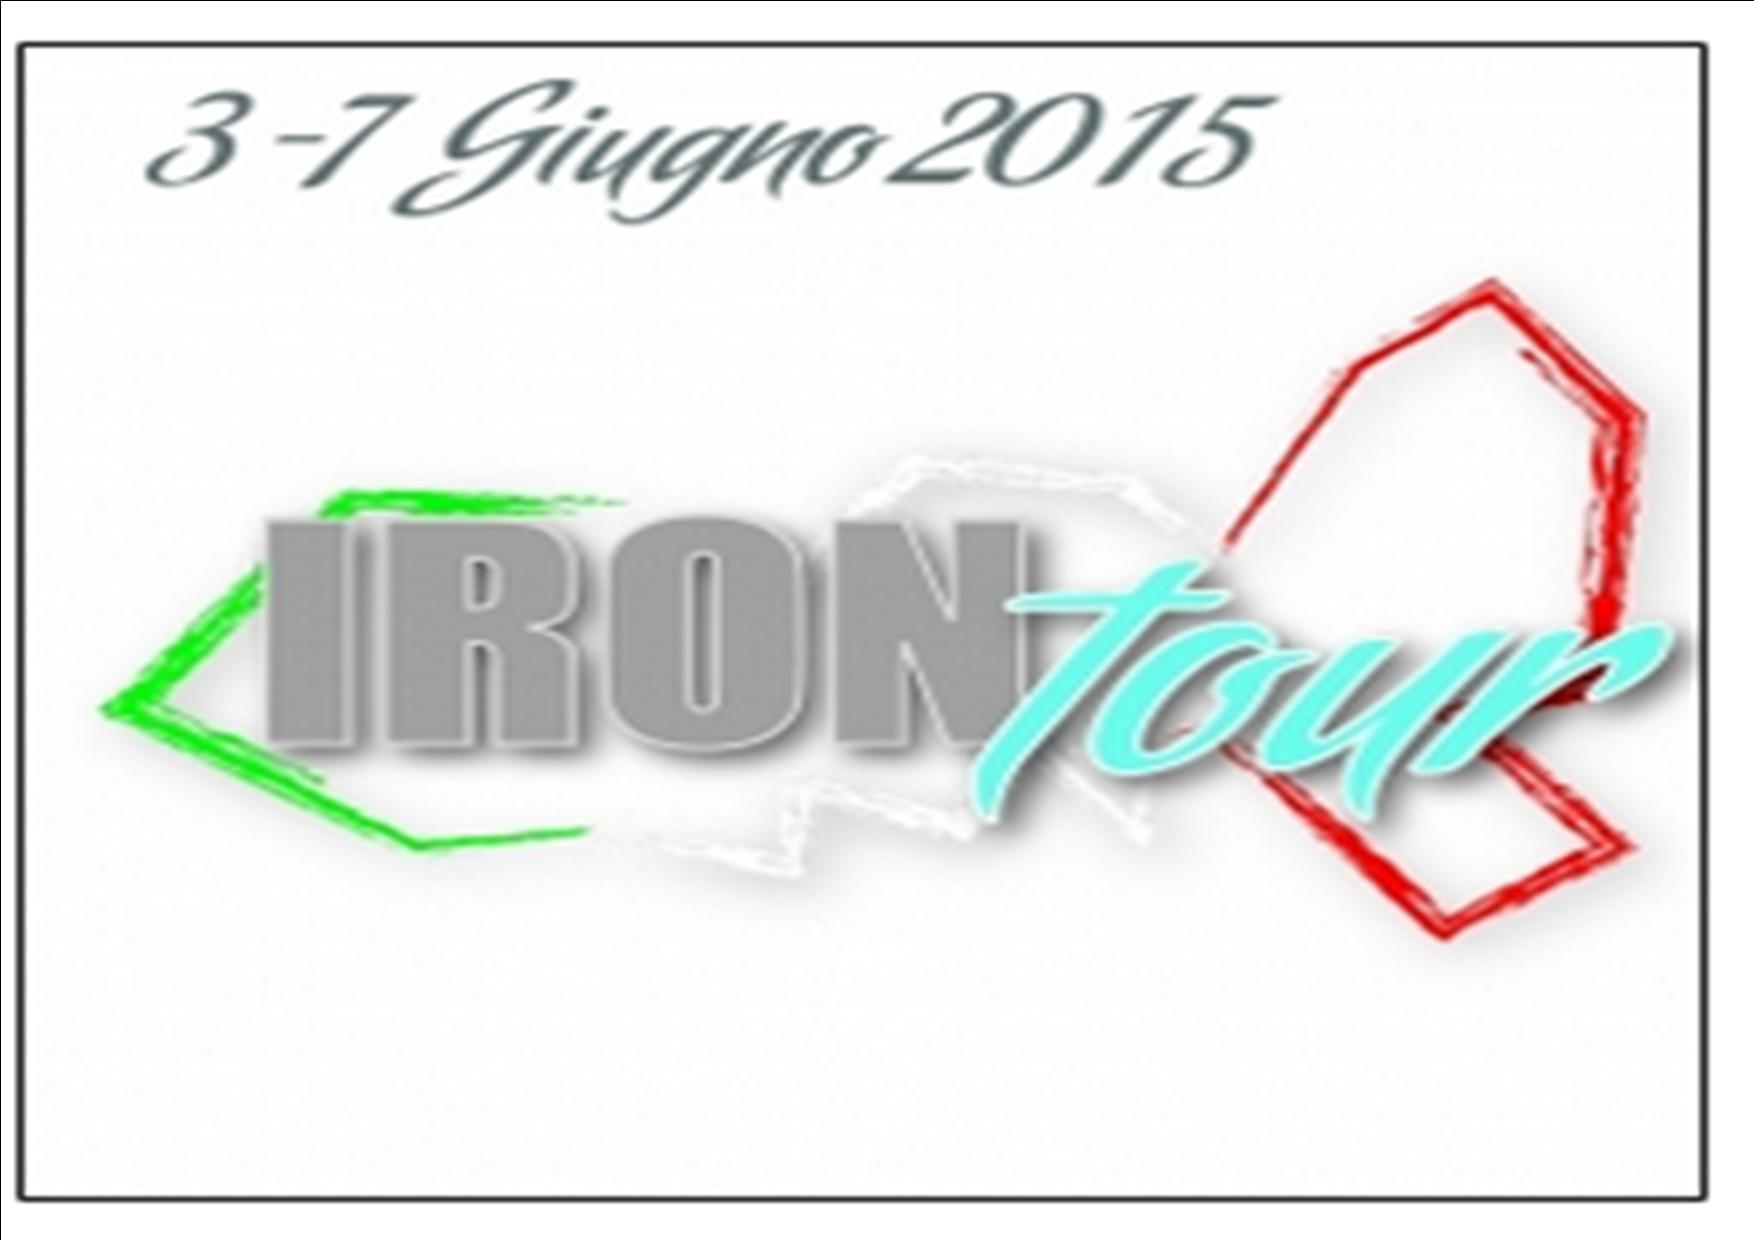 COPPA TOSCANA 2015 - IRON TOUR 2015